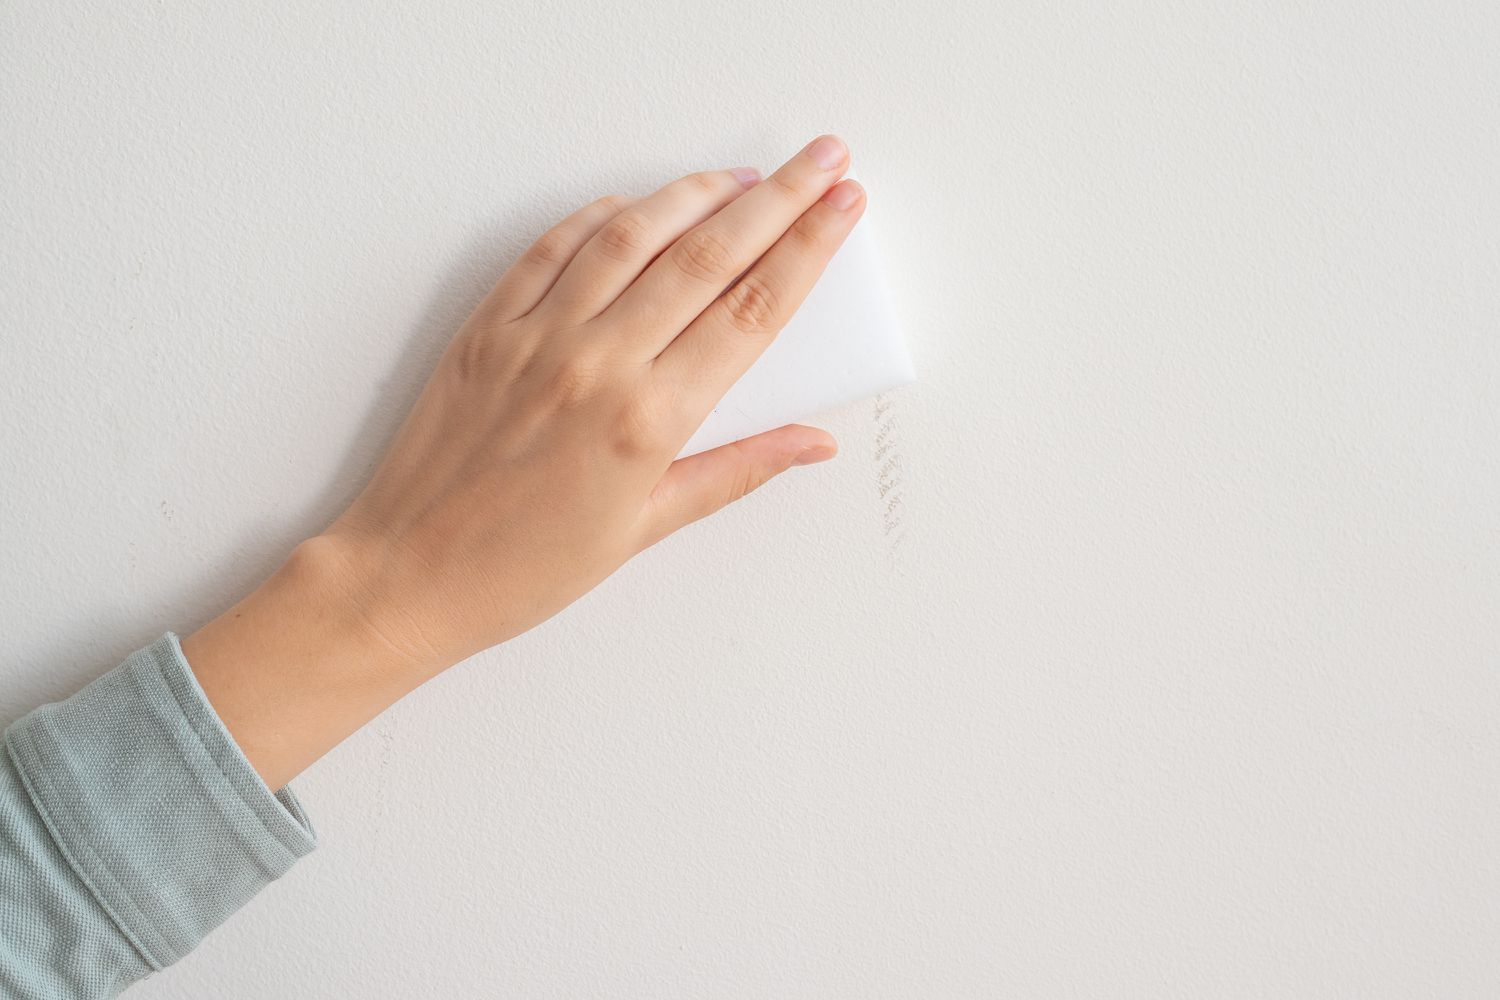 Magic Eraser schrubbt weiße Wand, um Kratzer zu entfernen